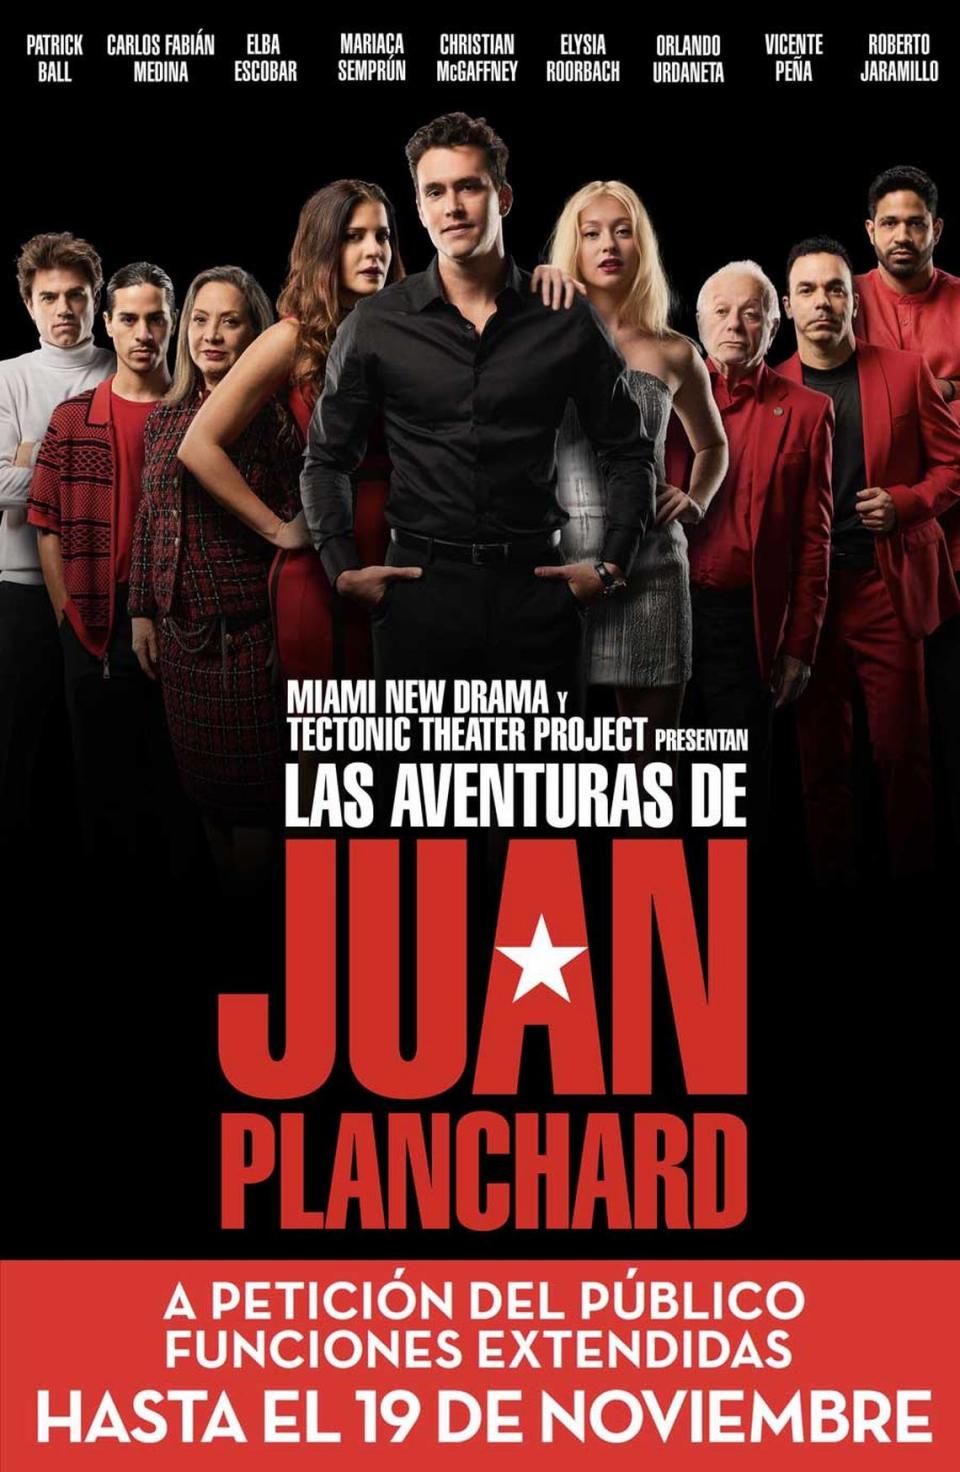 El póster de “Las Aventuras de Juan Planchard”, un cartel de Manuel González Ruiz/Mago Atelier.